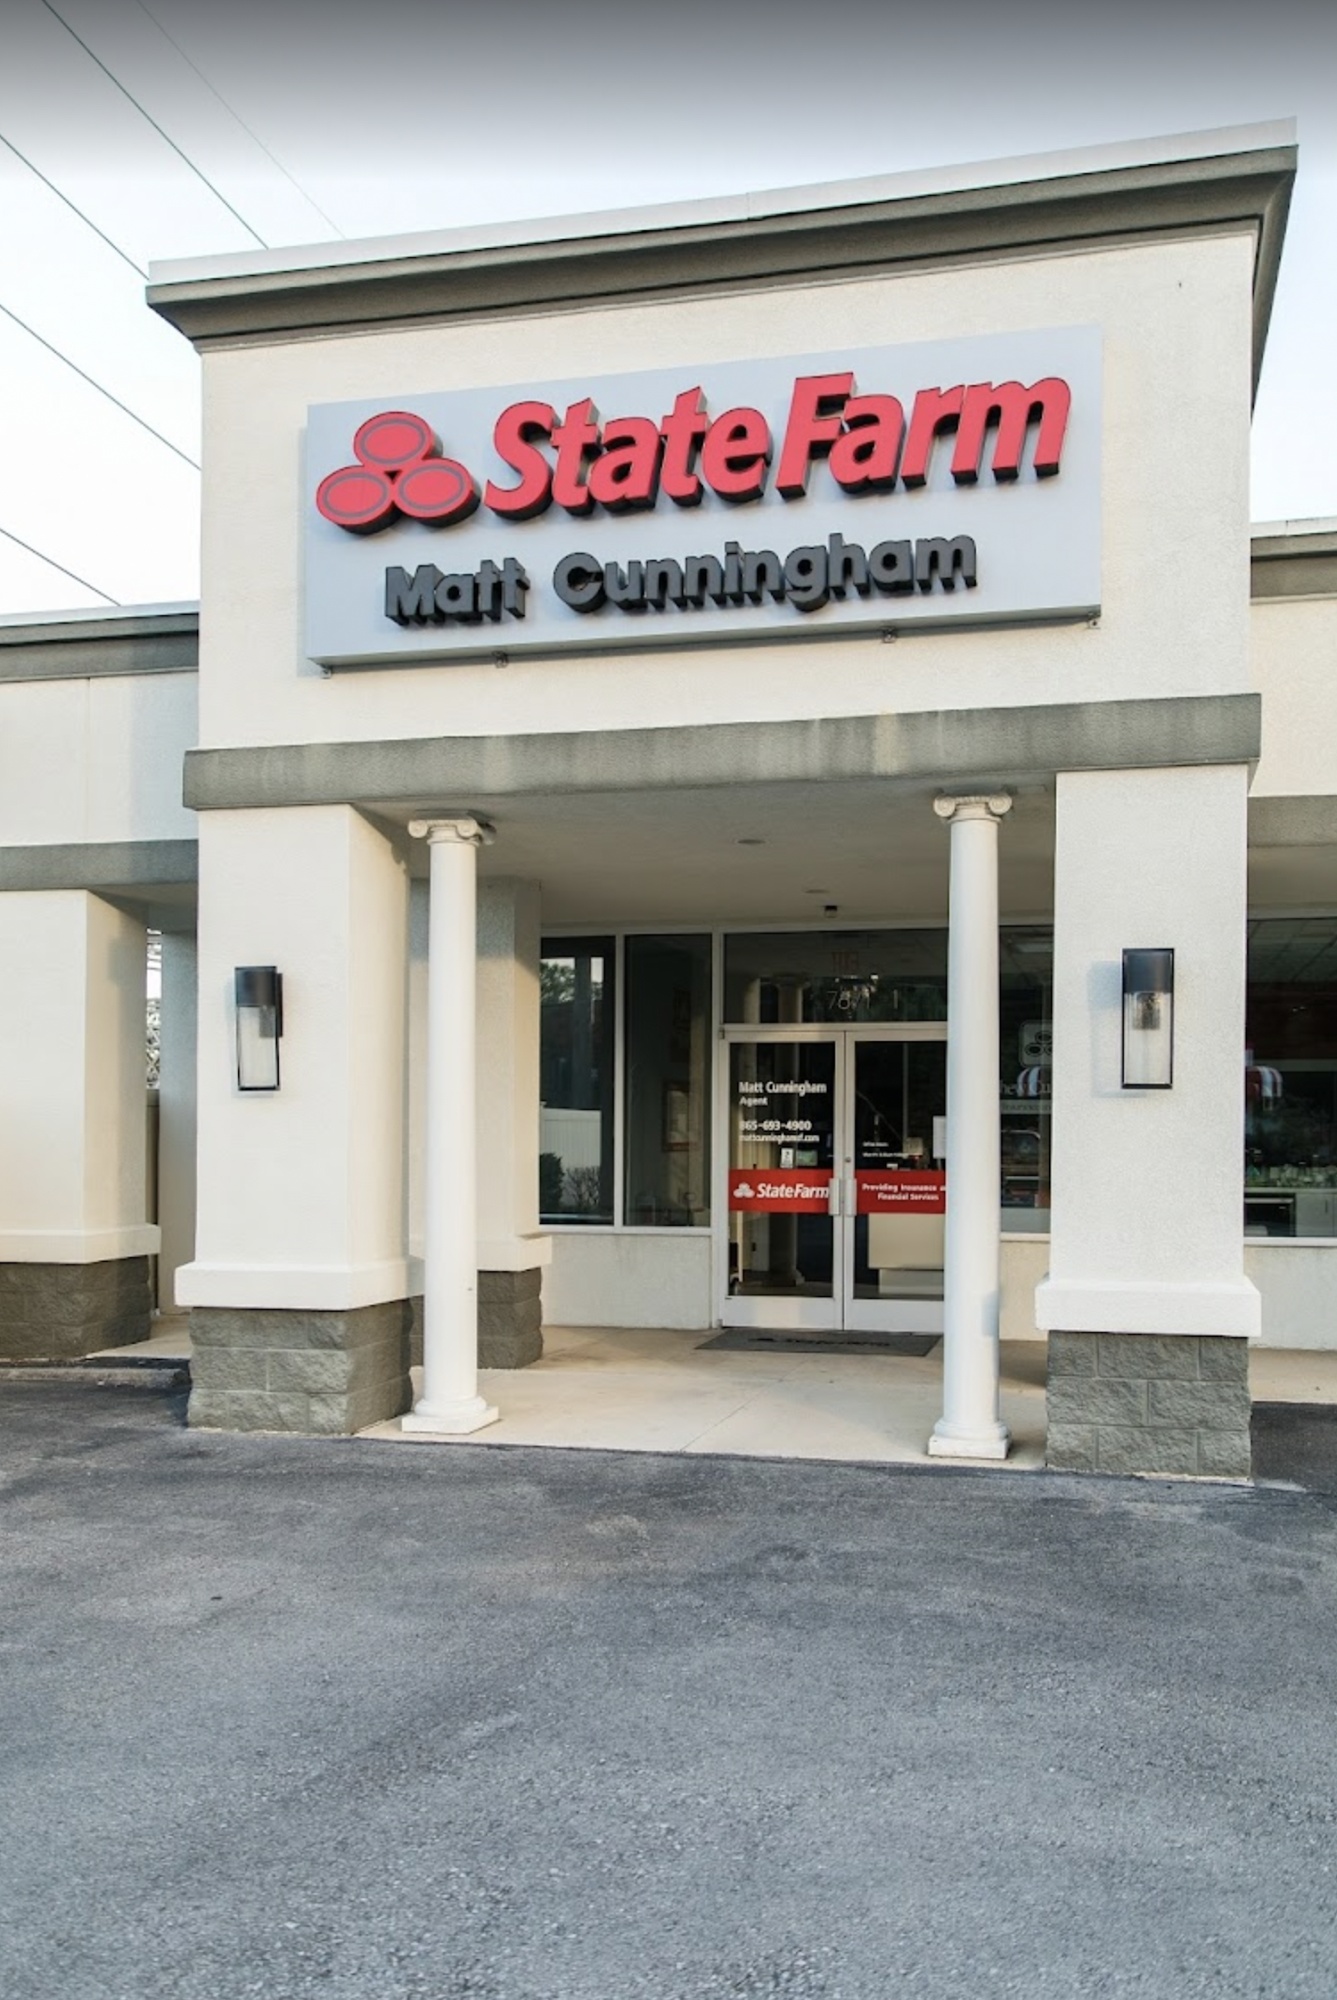 Matt Cunningham - State Farm Insurance Agent